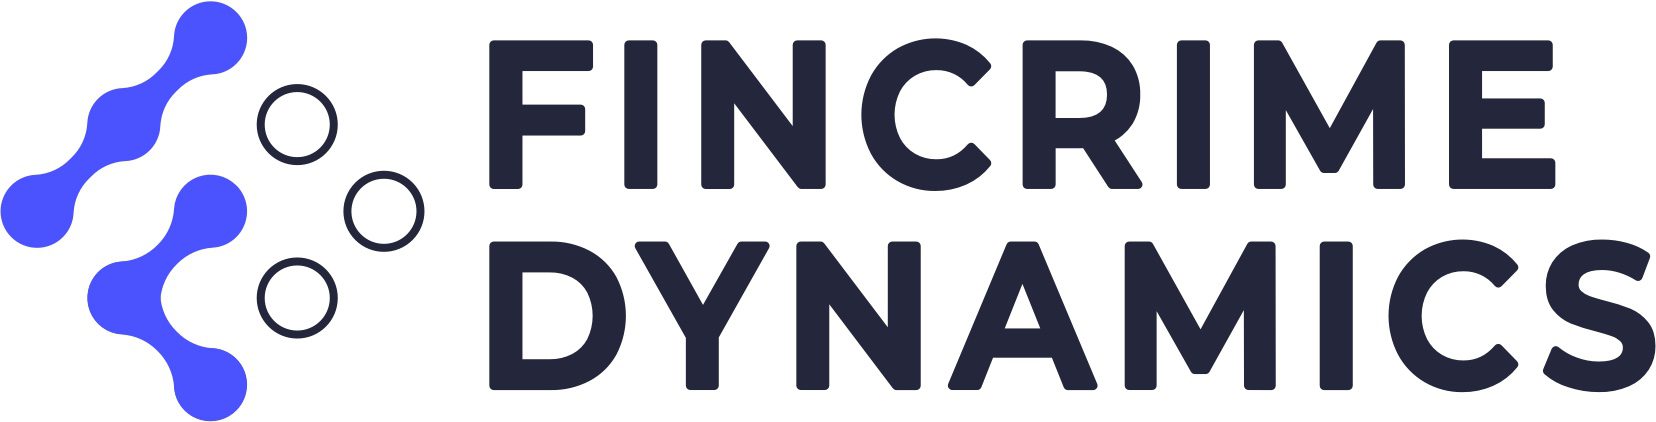 fincrime-dynamics-logo-white